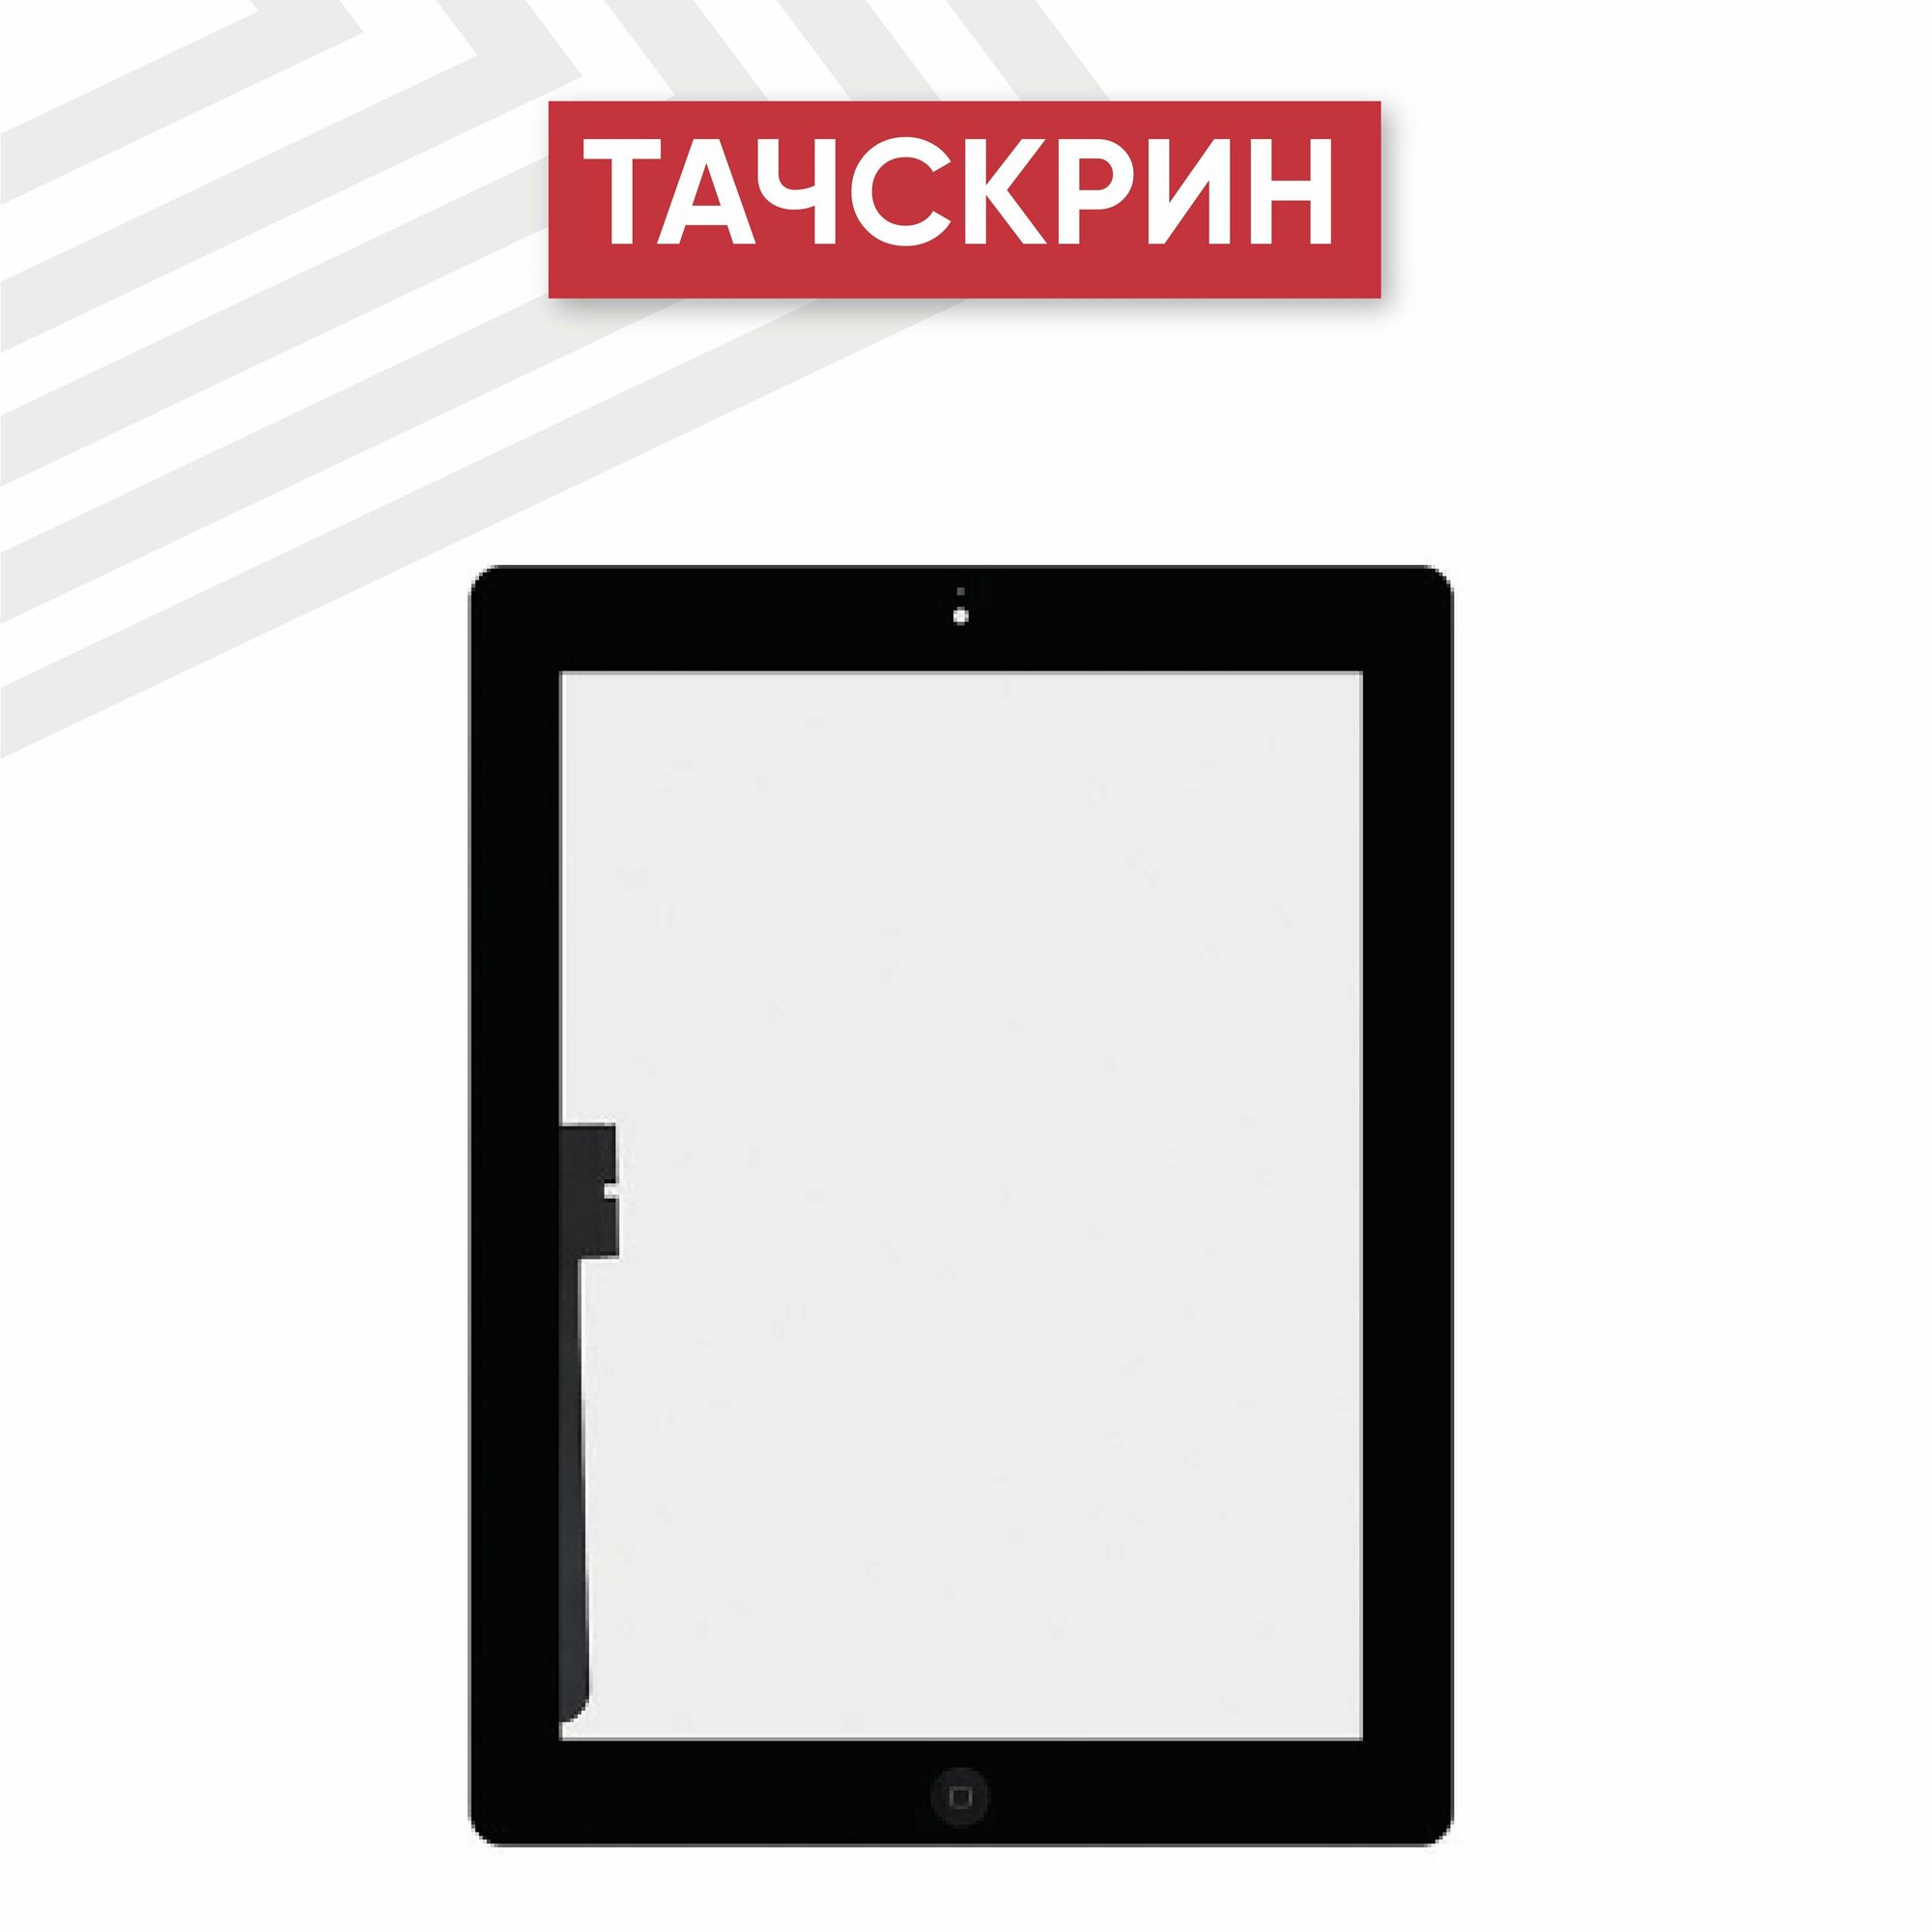 Тачскрин (сенсорное стекло) RageX для планшета iPad 3 (A1416 A1430 A1403) с кнопкой Home 9.7" класс ААА черный